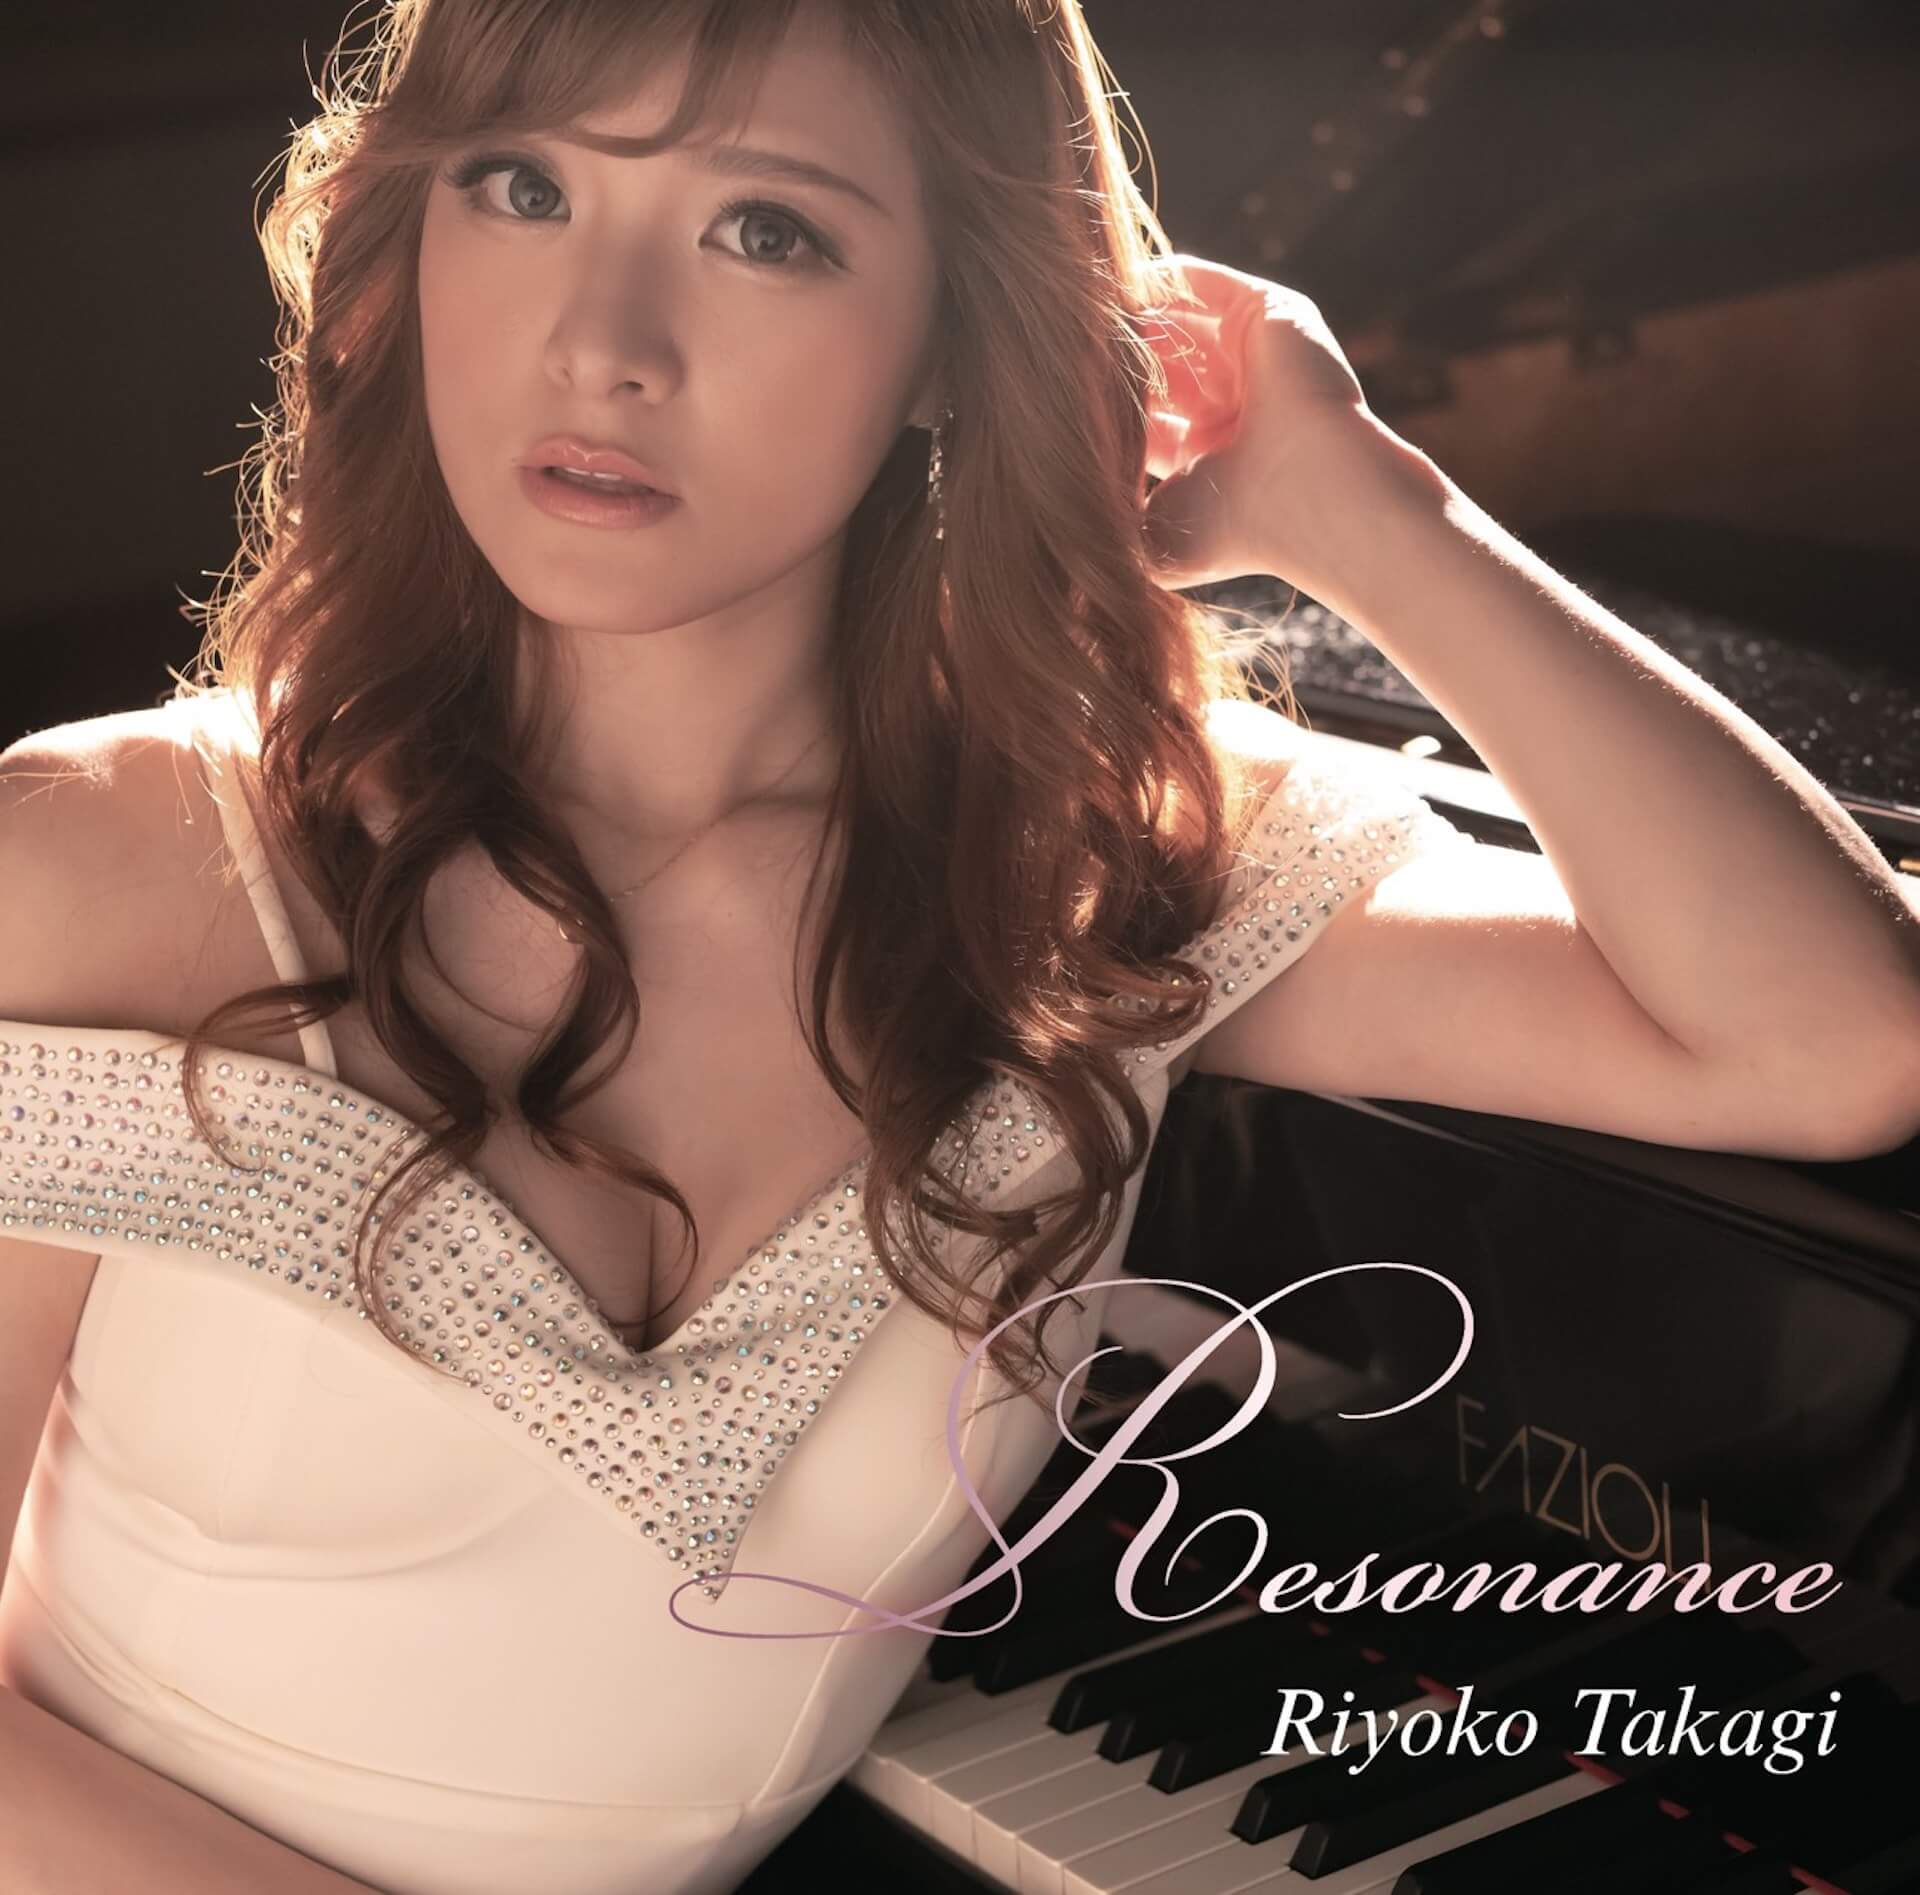 エロ過ぎるジャズピアニストとして一世を風靡した高木里代子がニューアルバムをリリース music191004-riyotakagi